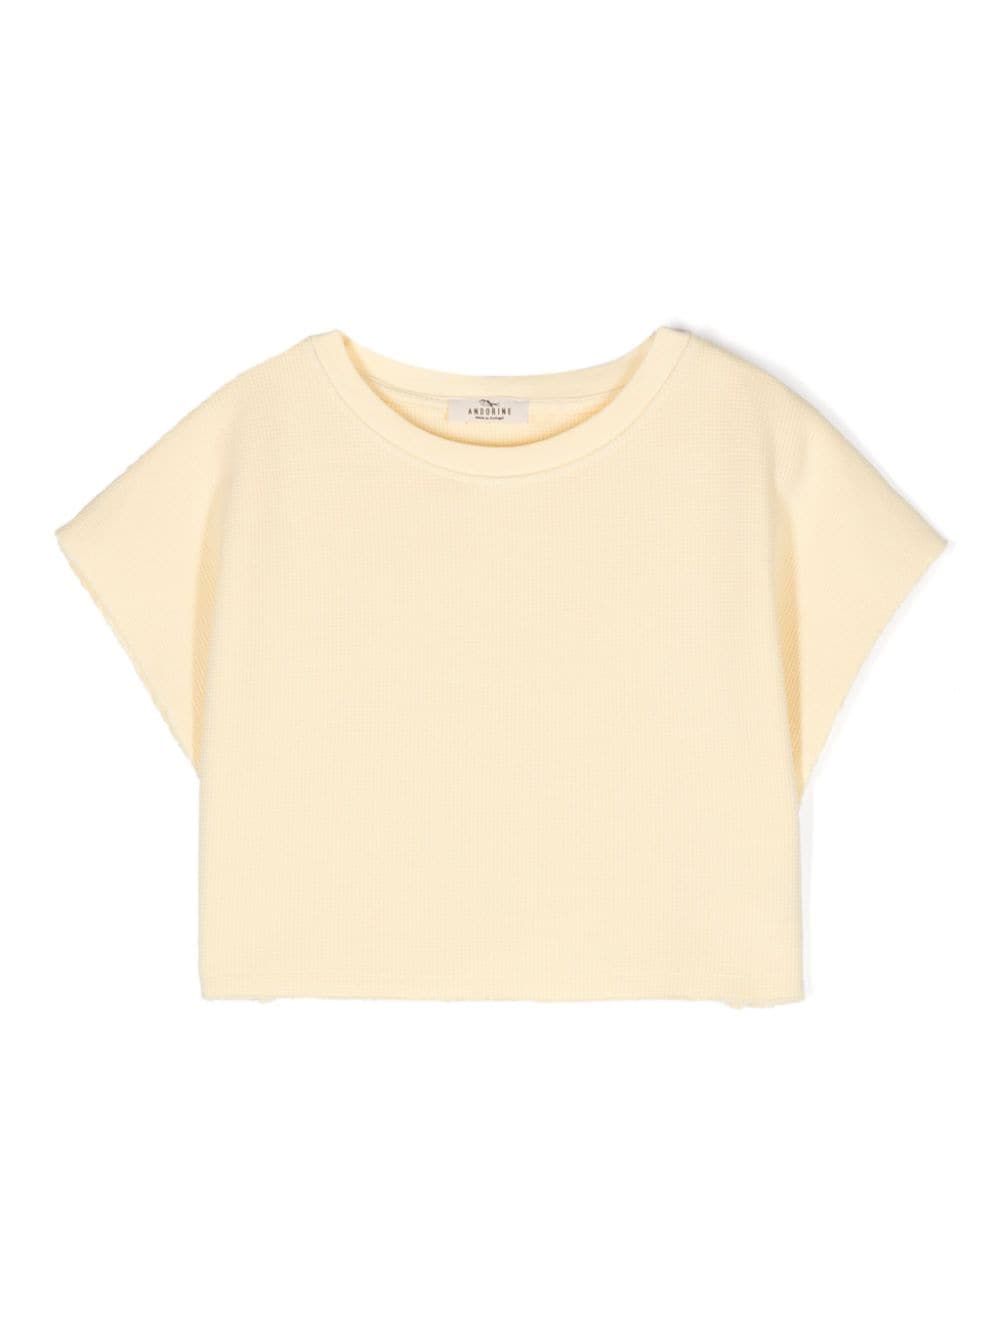 andorine t-shirt en coton à manches courtes - jaune